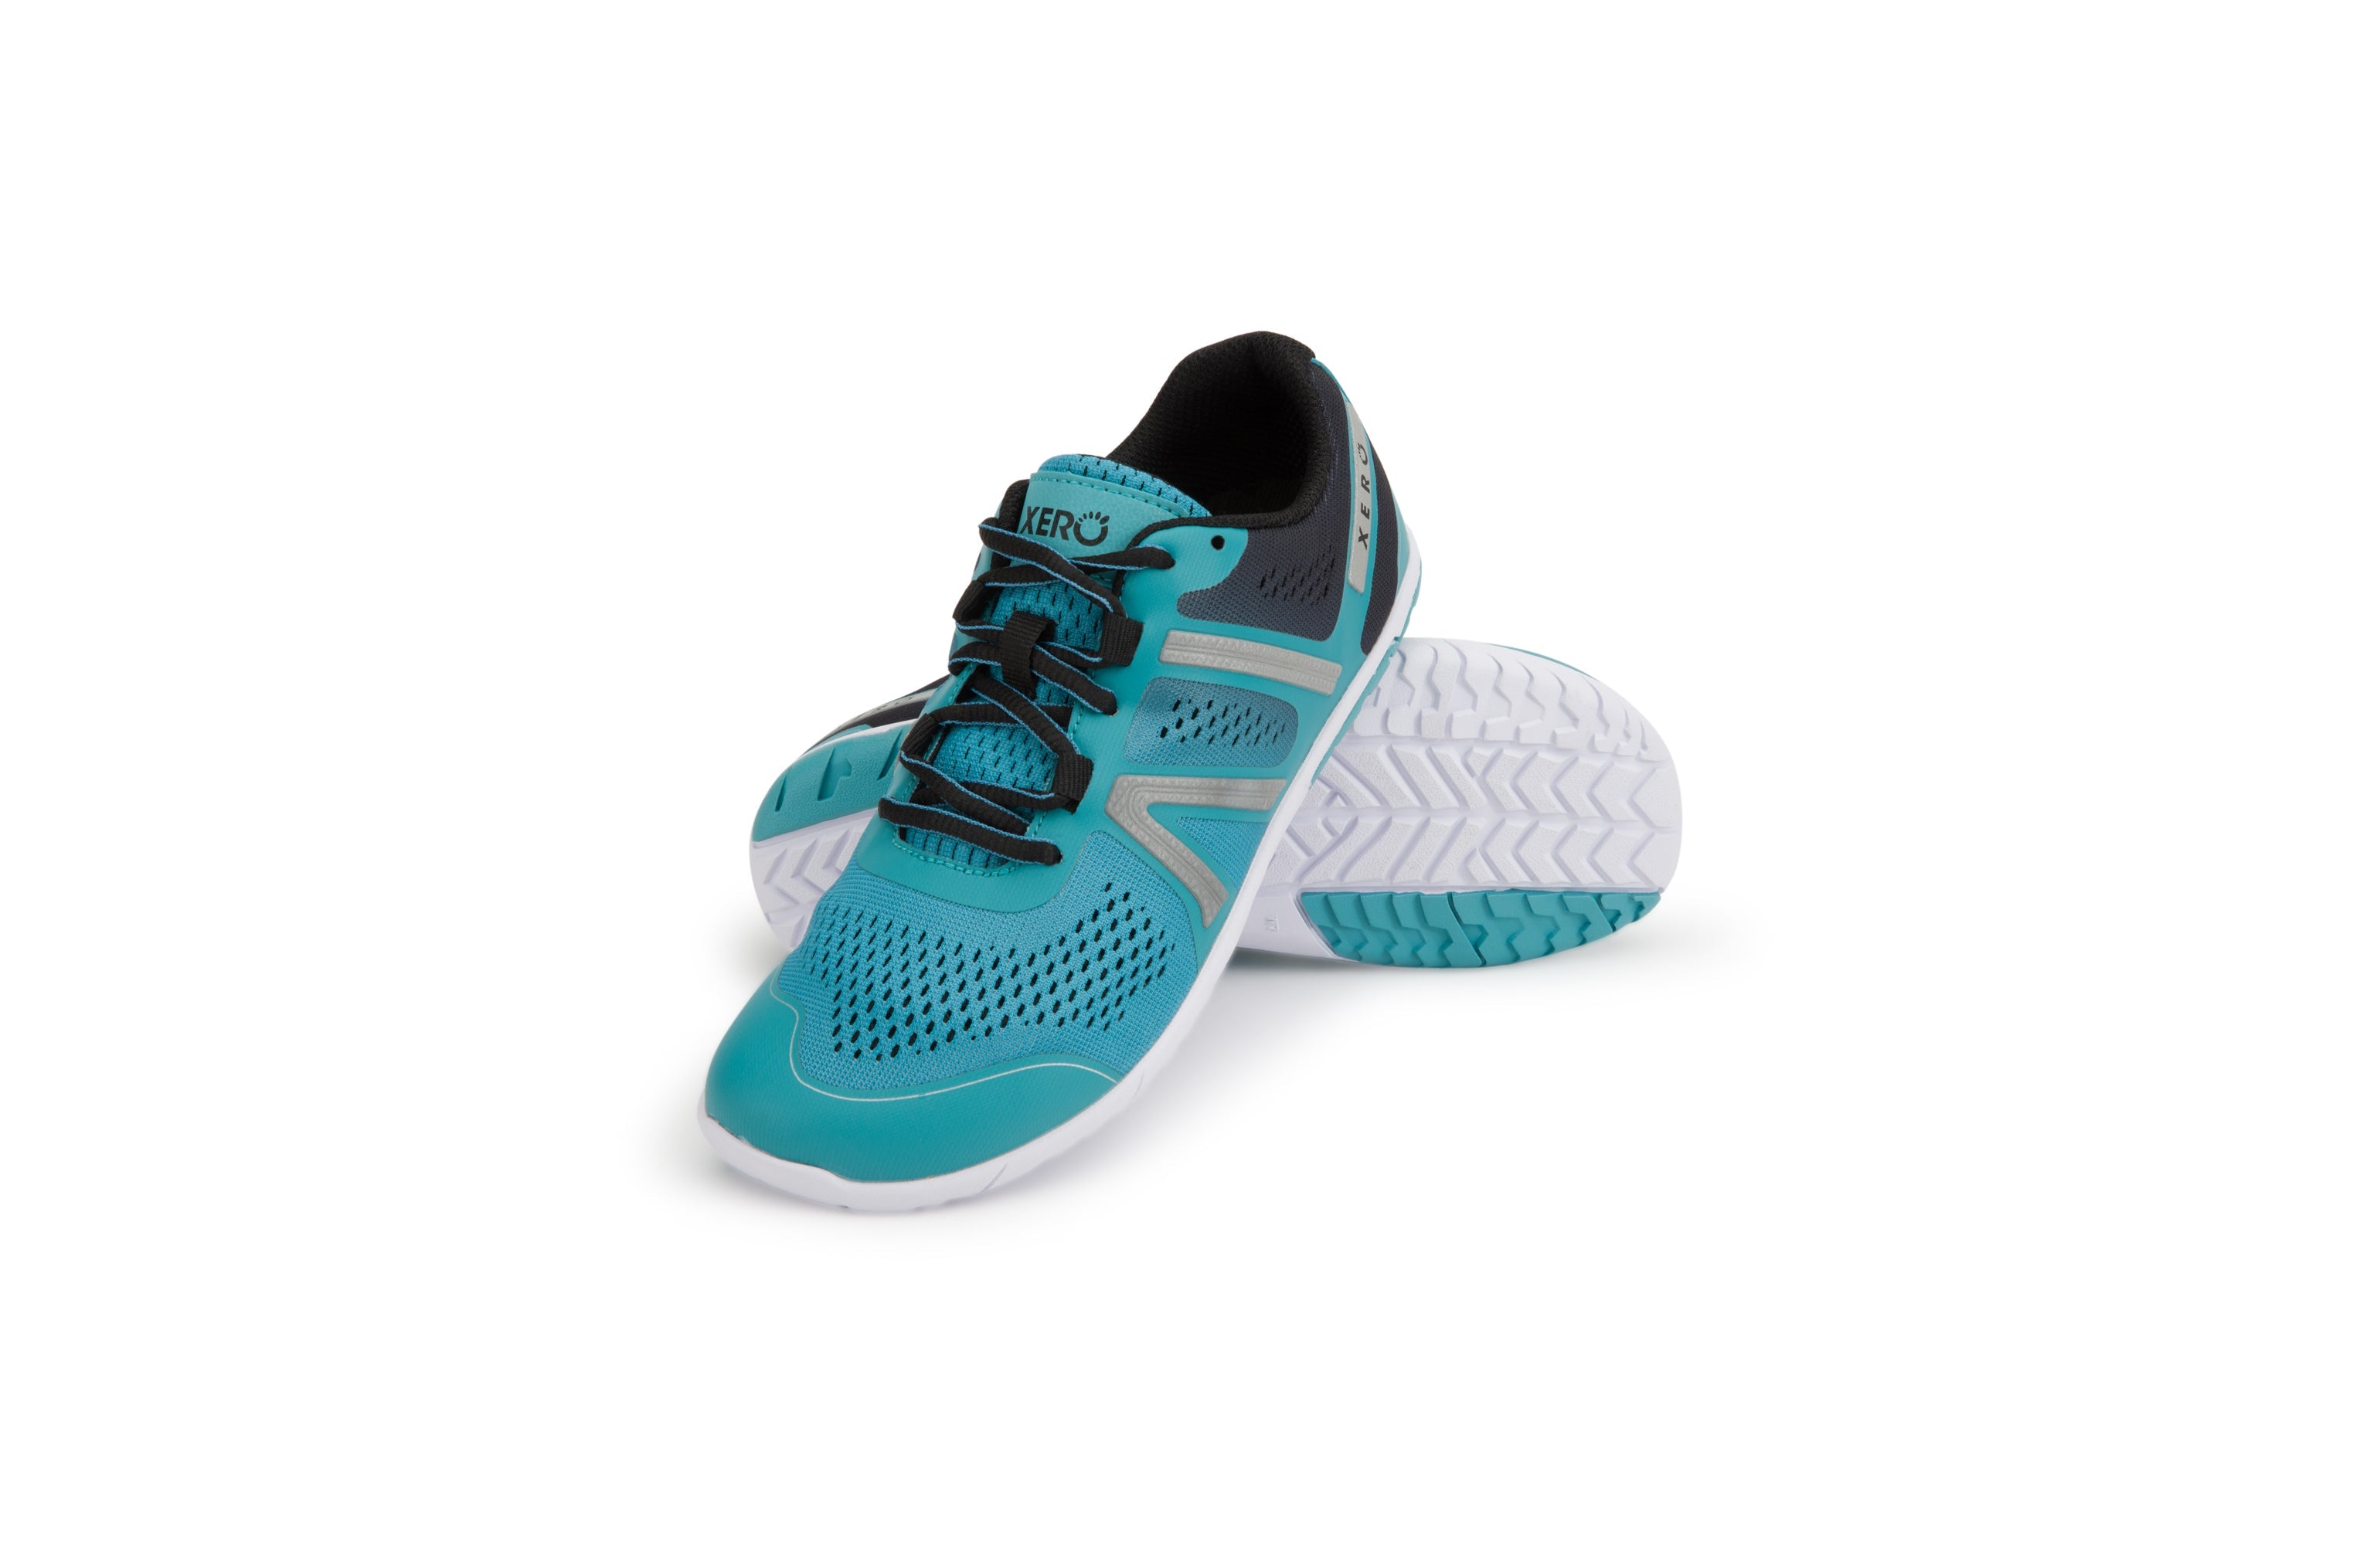 Xero Shoes HFS Womens barfods træningssko/løbesko til kvinder i farven porcelain blue, par